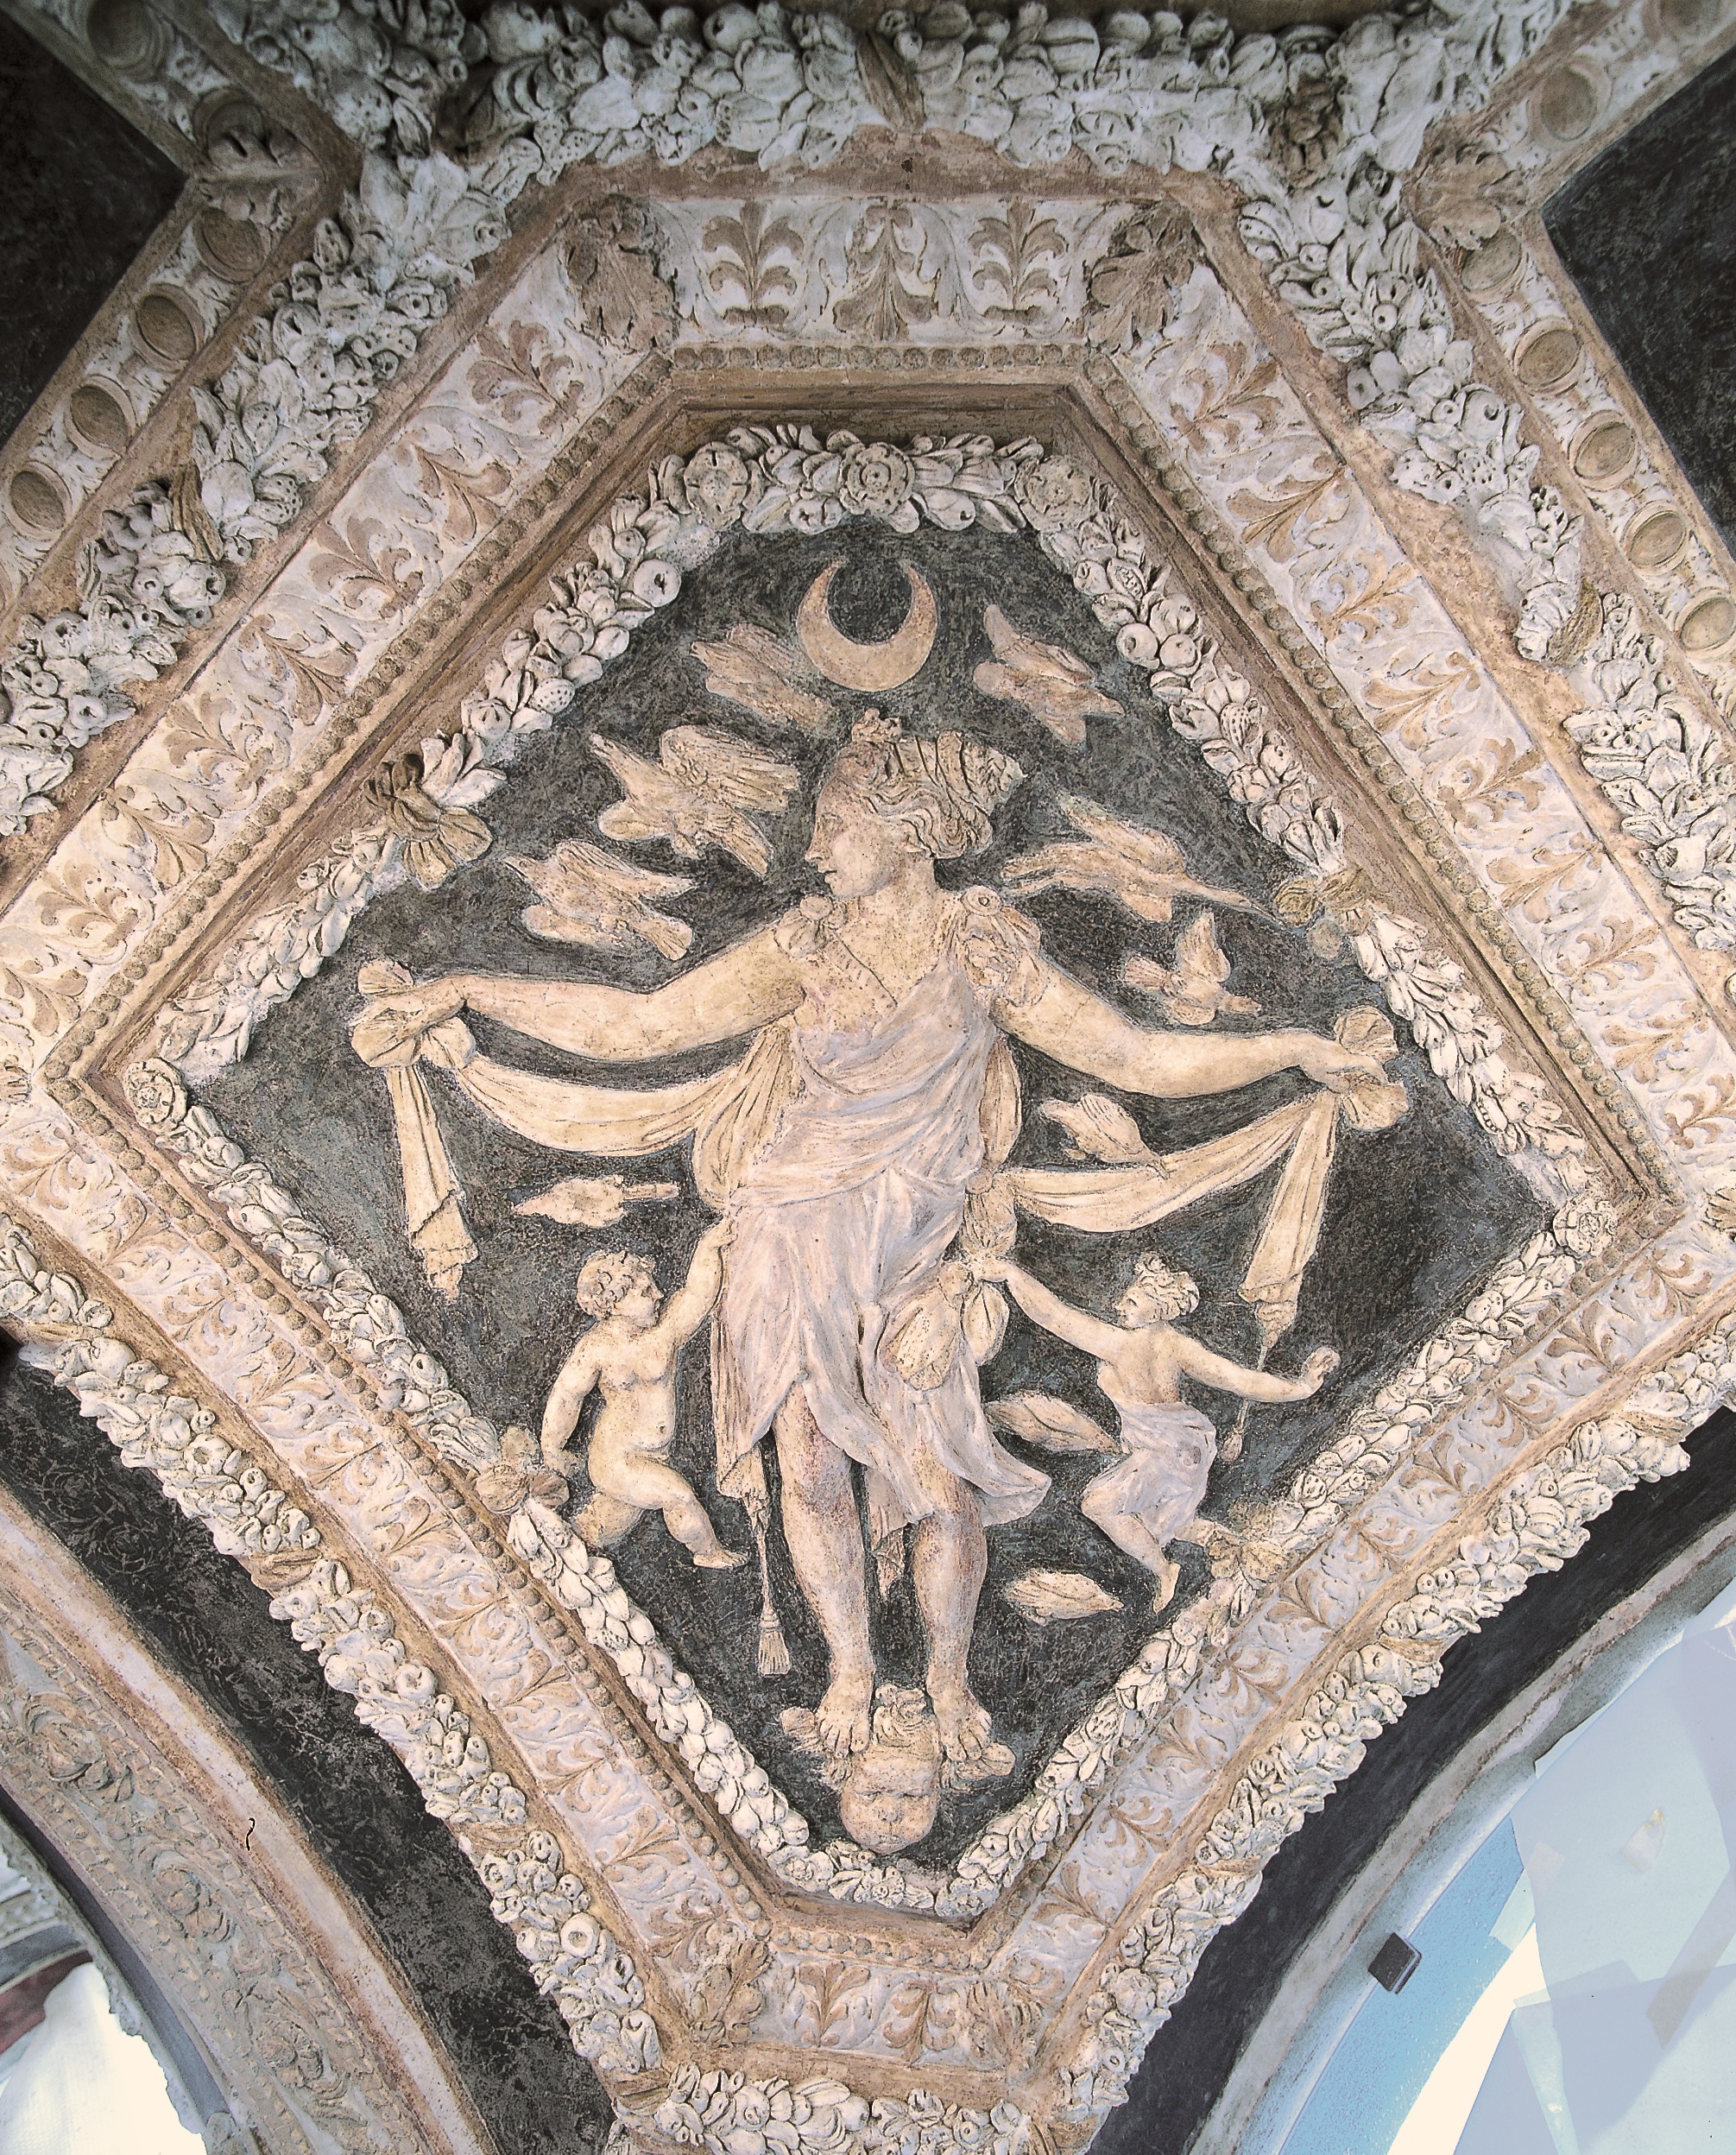 Stucco decorations in the Loggia degli Eroi